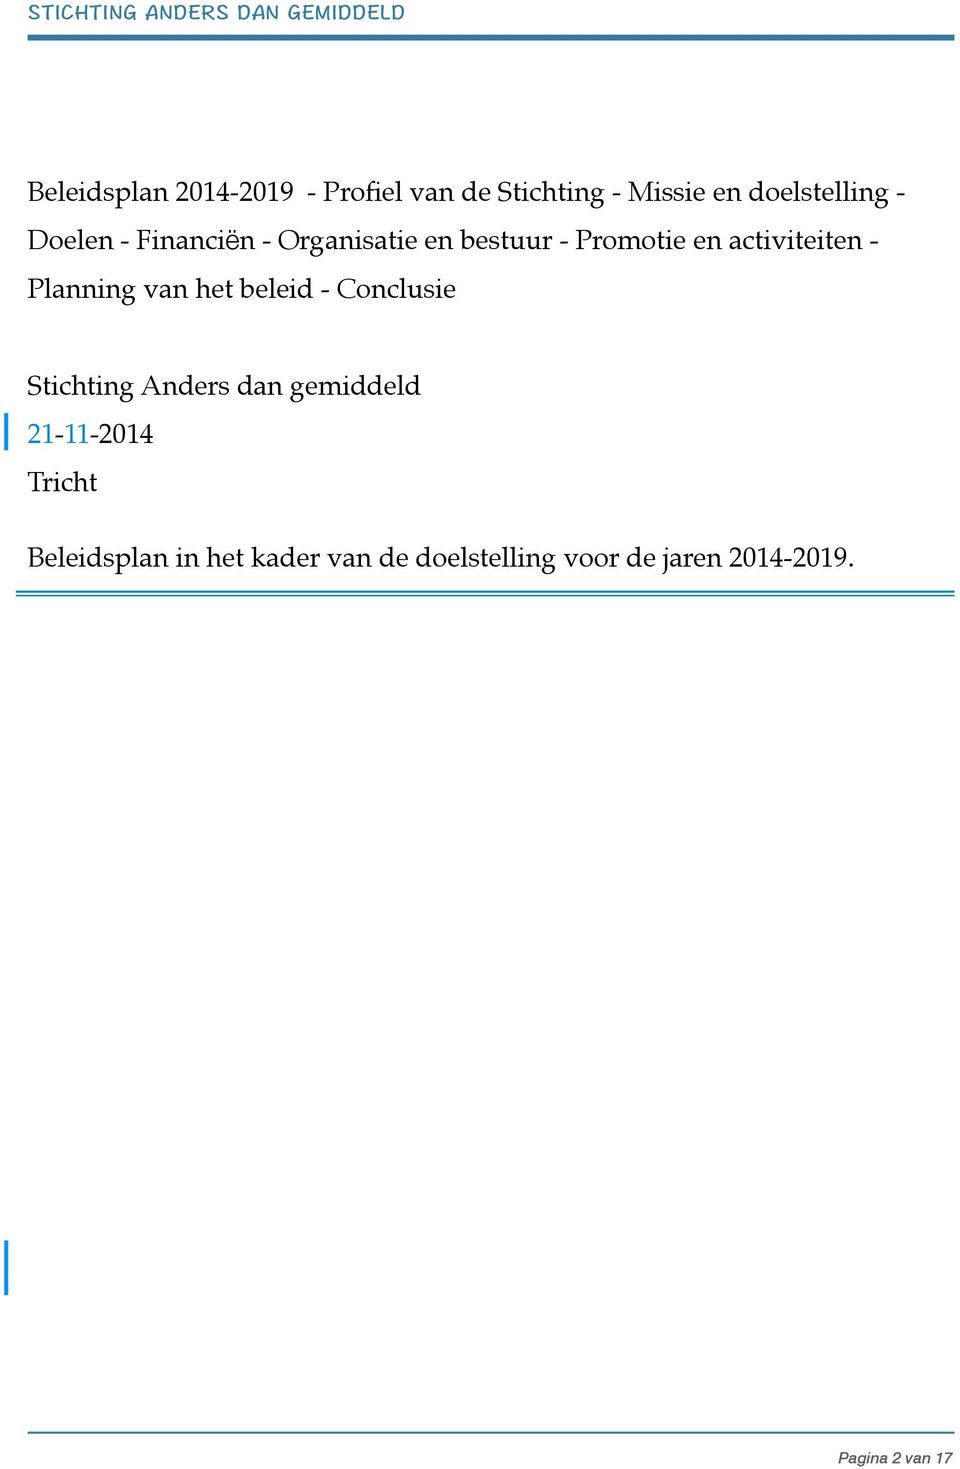 Planning van het beleid - Conclusie Stichting Anders dan gemiddeld 21-11-2014